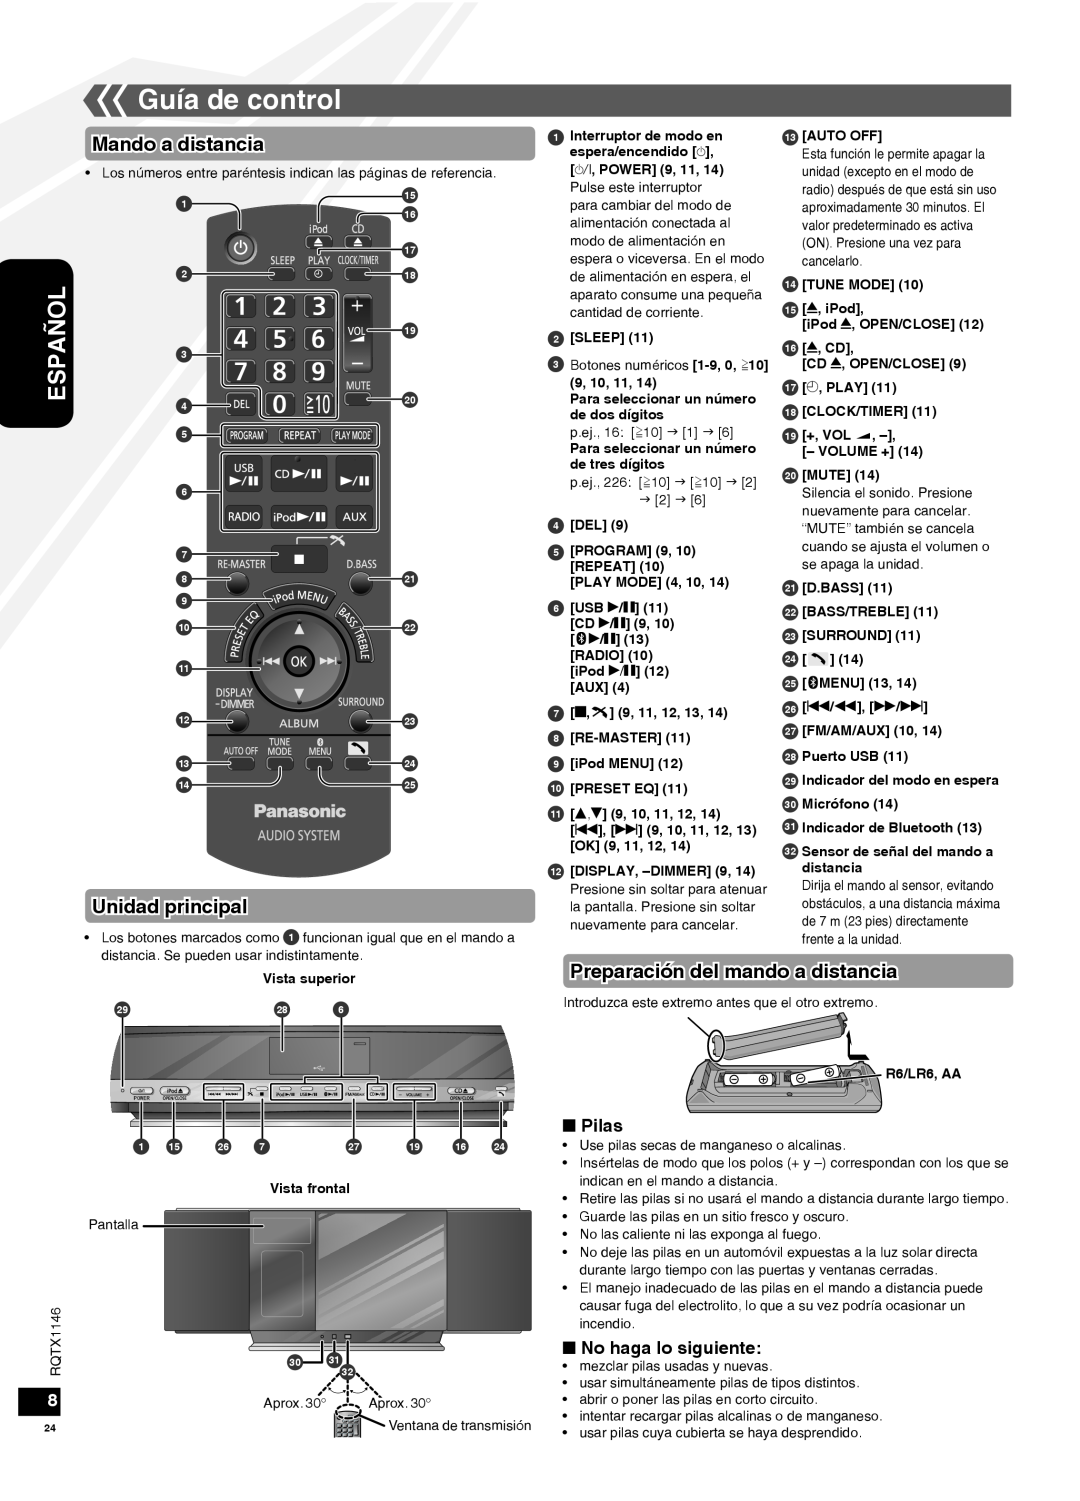 Panasonic SC-HC40 Guía de control, Mando a distancia, Unidad principal, Preparación del mando a distancia, Pilas, Español 